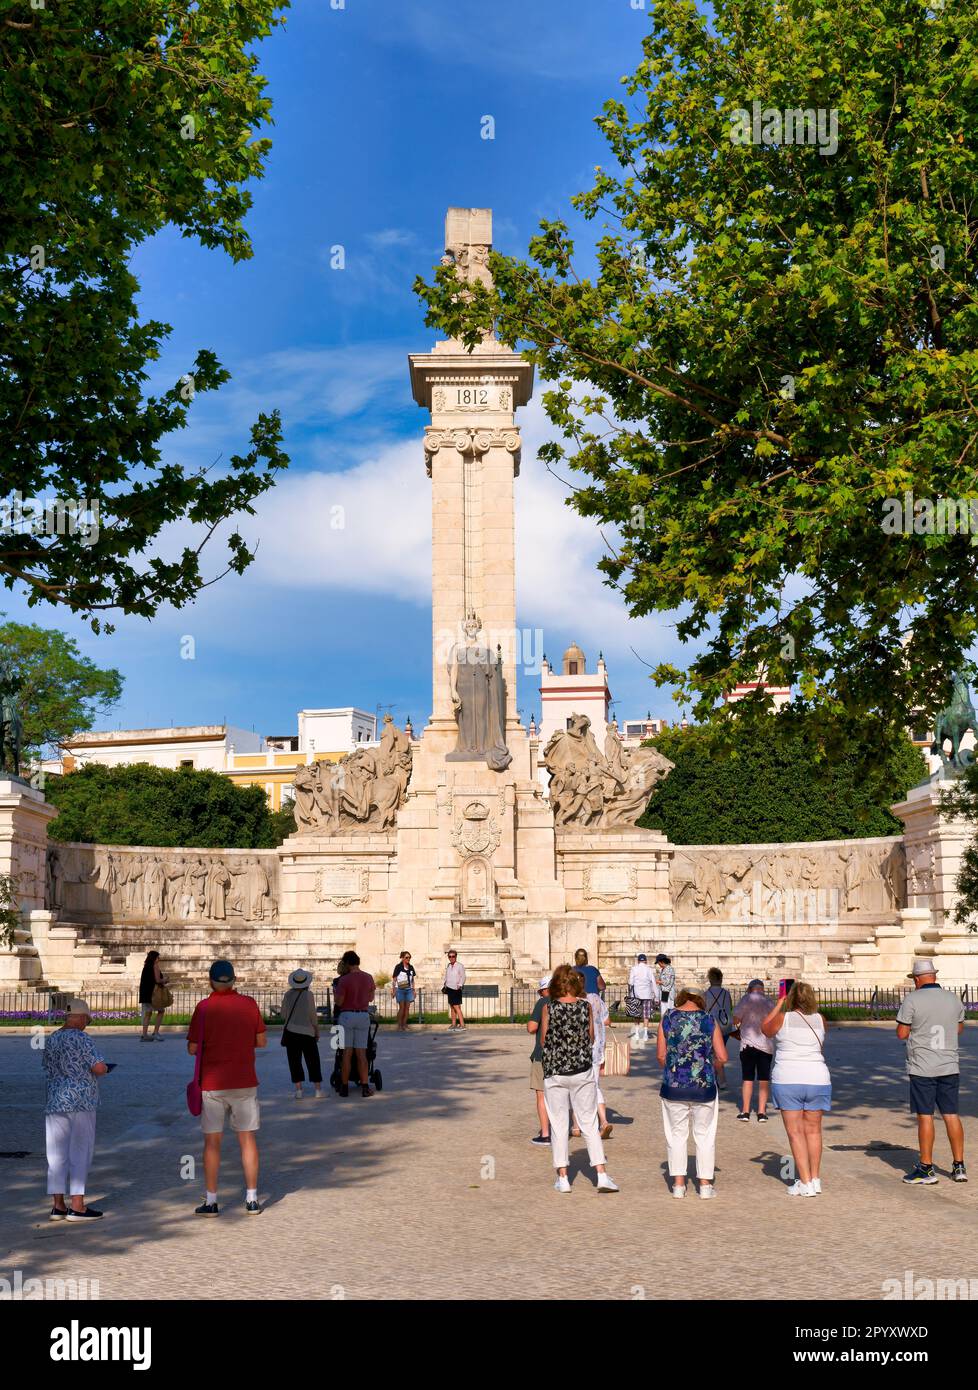 Il Monumento alla Costituzione del 1812 è un monumento a Cádiz, Spagna, che commemora il centenario della firma della Costituzione del 1812 Foto Stock